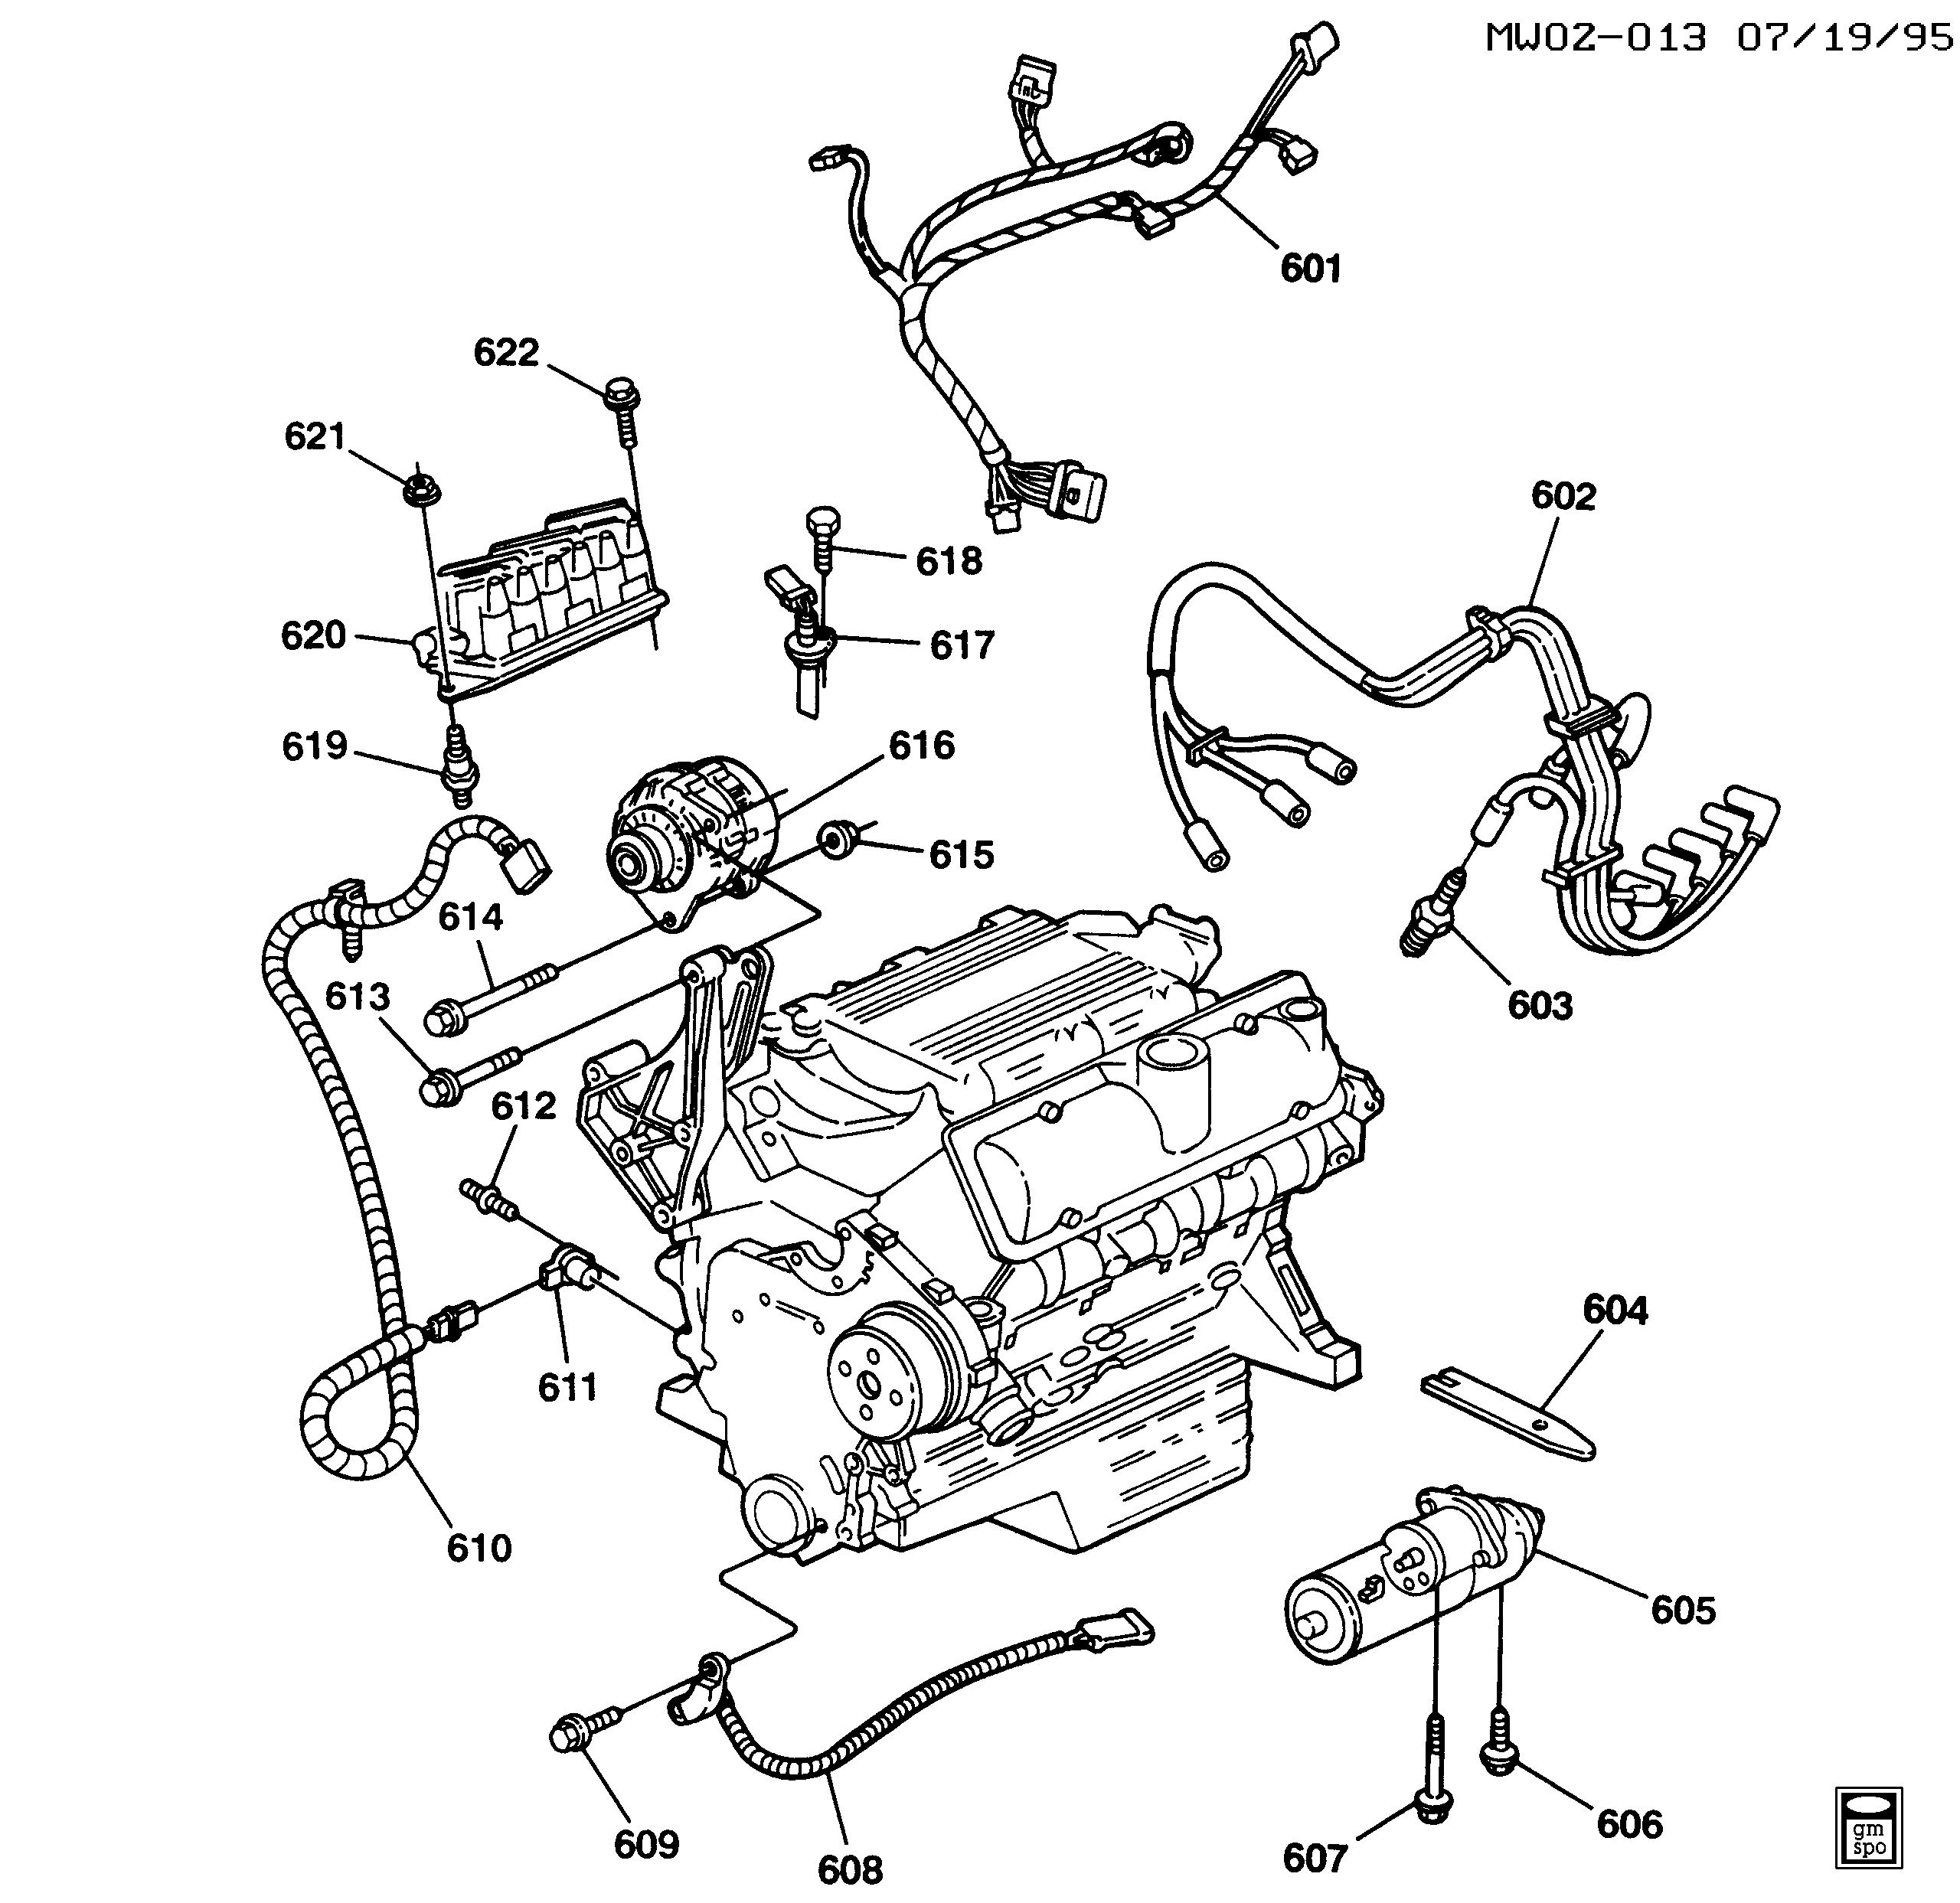 1994-1996 W ENGINE ELECTRICAL (L82/3.1M)